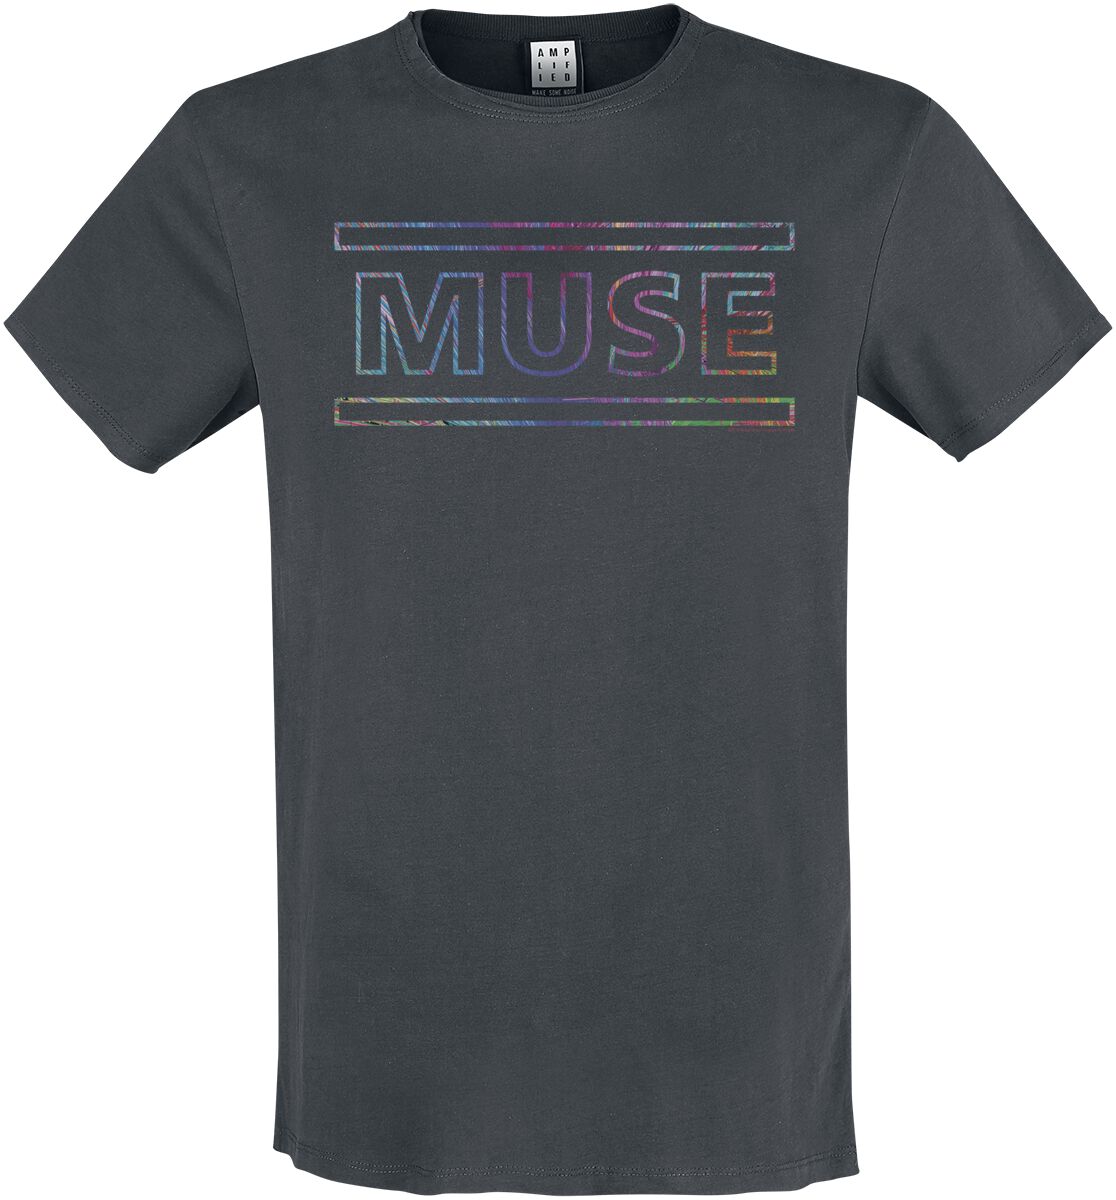 Muse T-Shirt - Amplified Collection - Logo - S bis 3XL - für Männer - Größe S - charcoal  - Lizenziertes Merchandise!